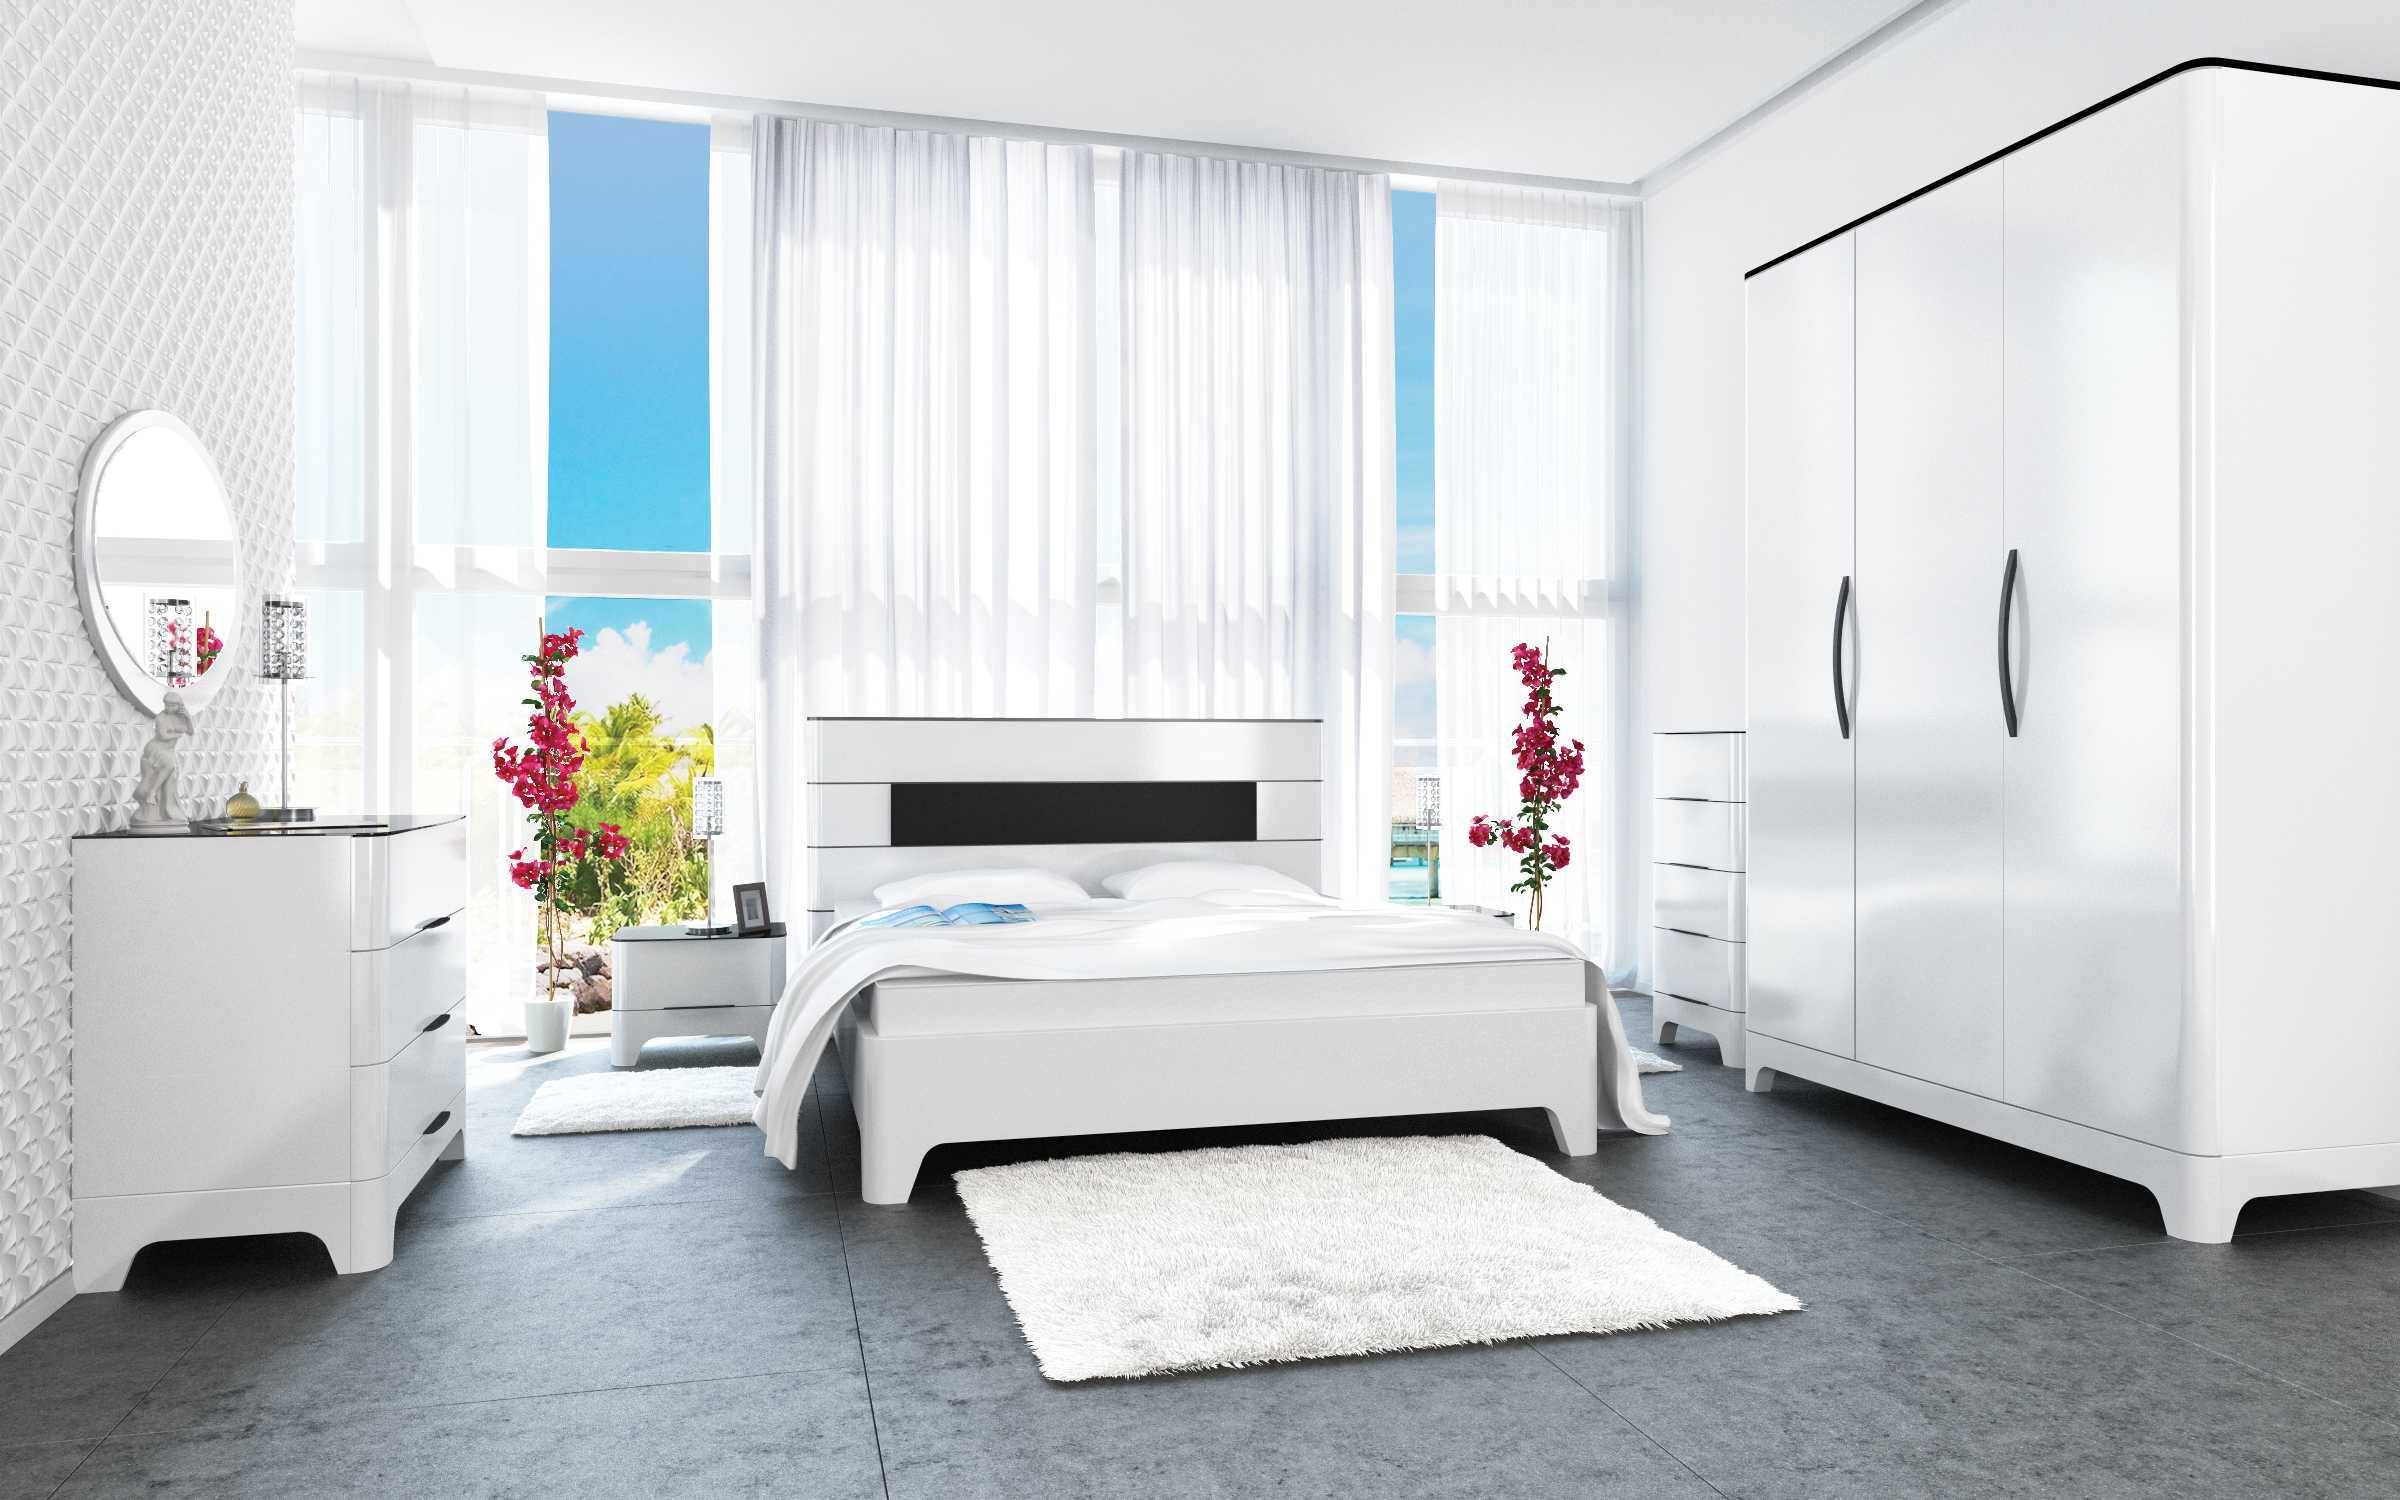 Интерьер белой спальни, выбор цвета, стиля, оформление дизайна